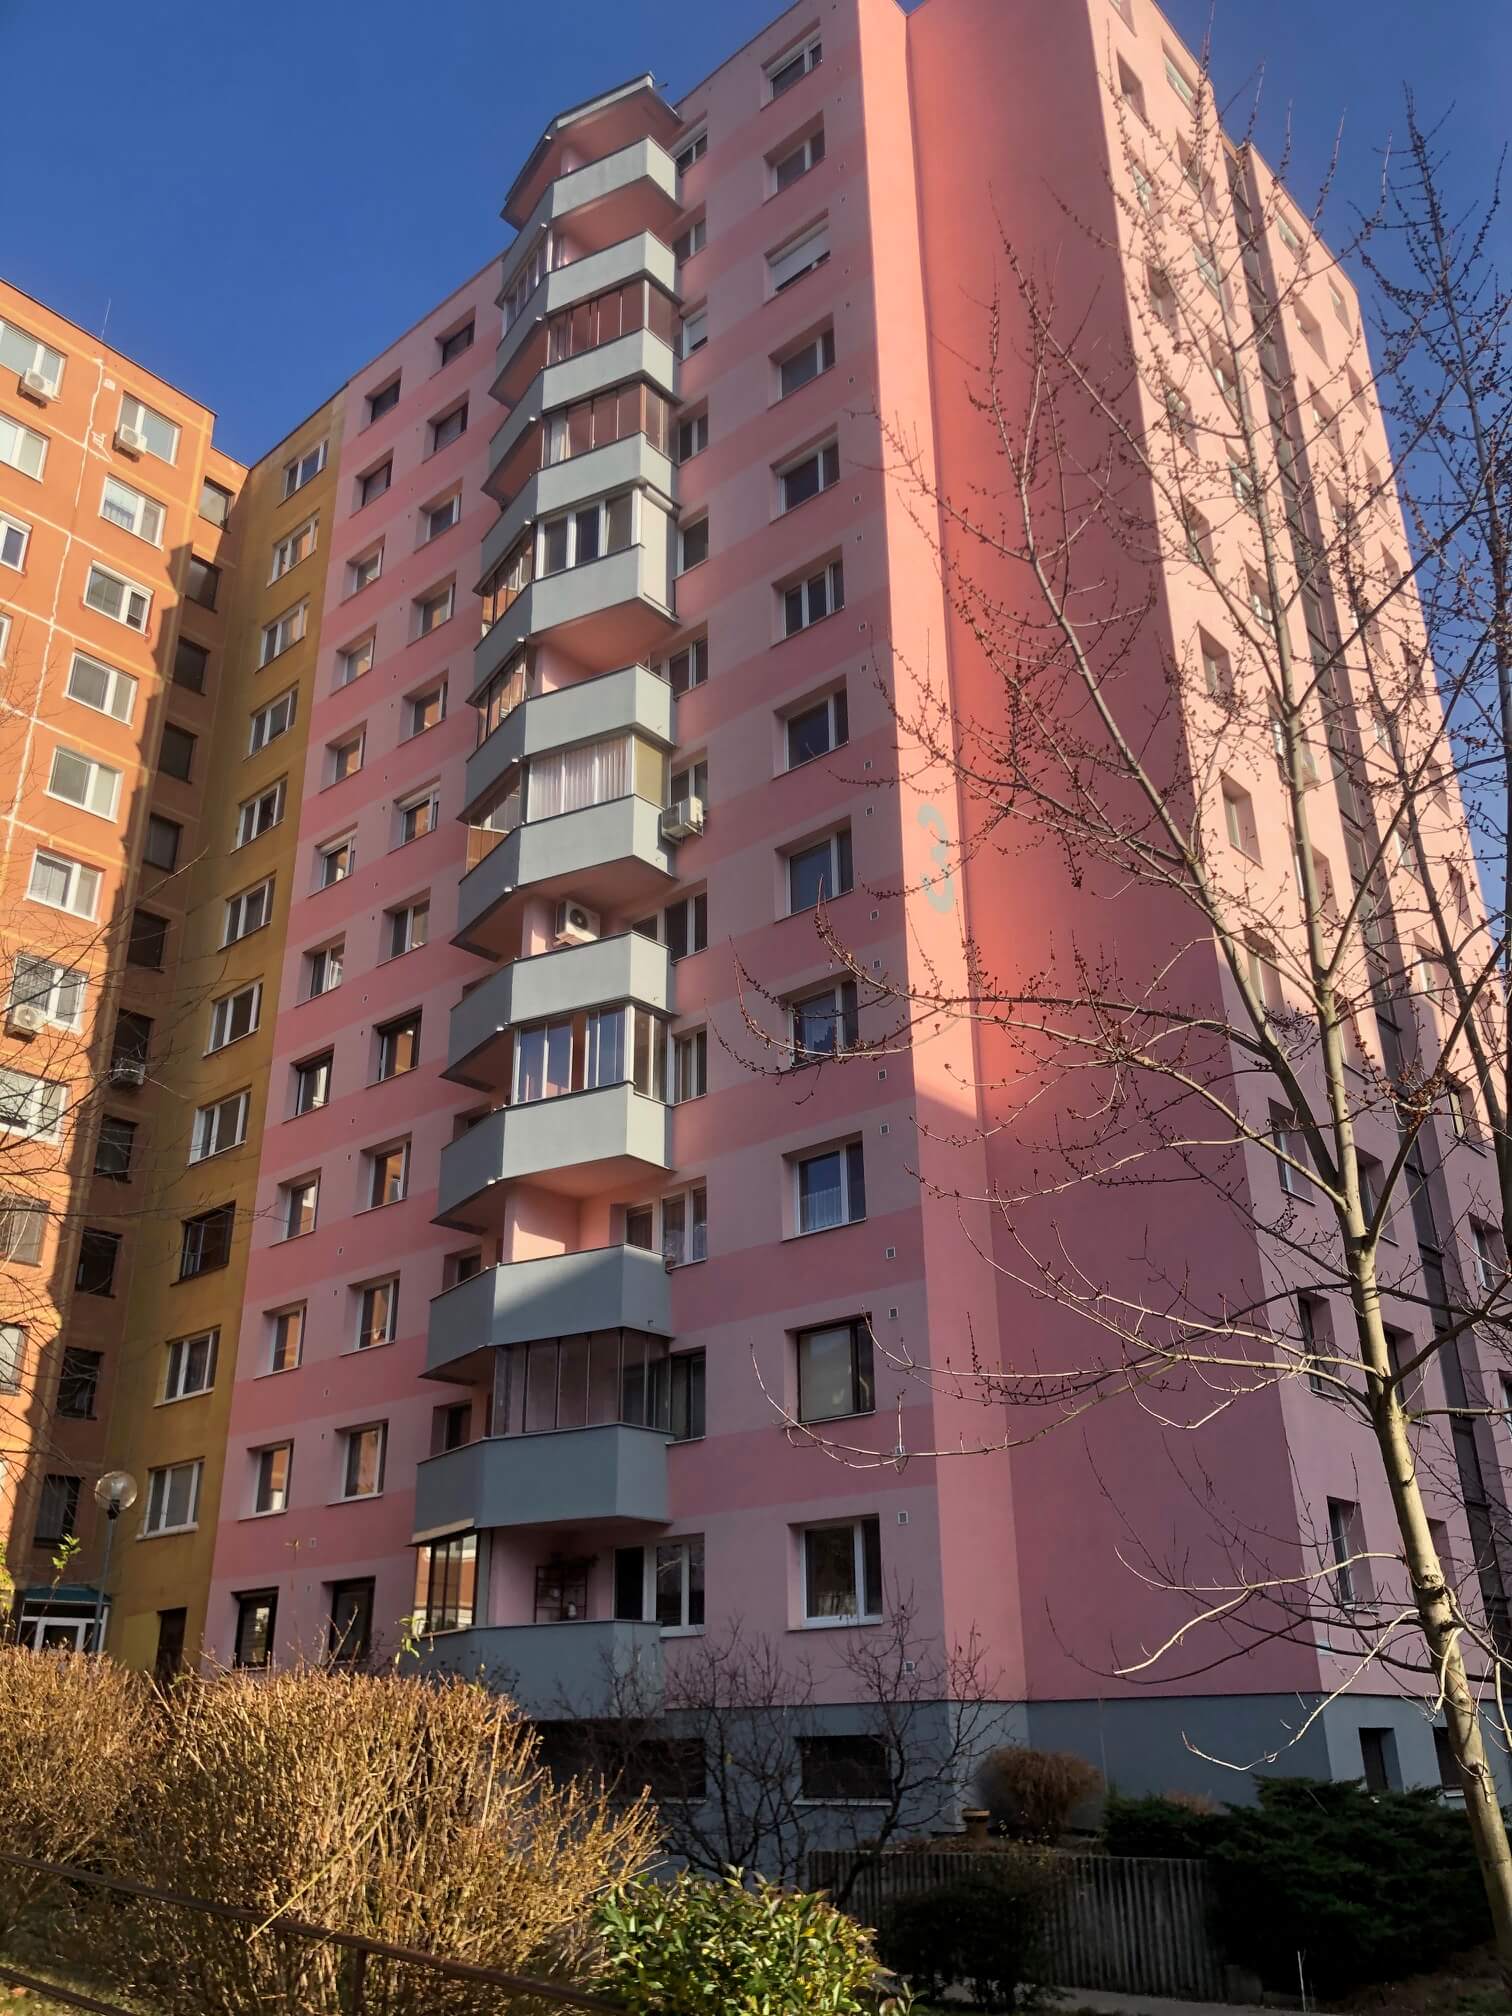 Predané: Exkluzívne na predaj 3 izbový byt, Devínska Nová Ves, Jána Poničana 3, 65m2, balkon 4m2,klimatizácia-13